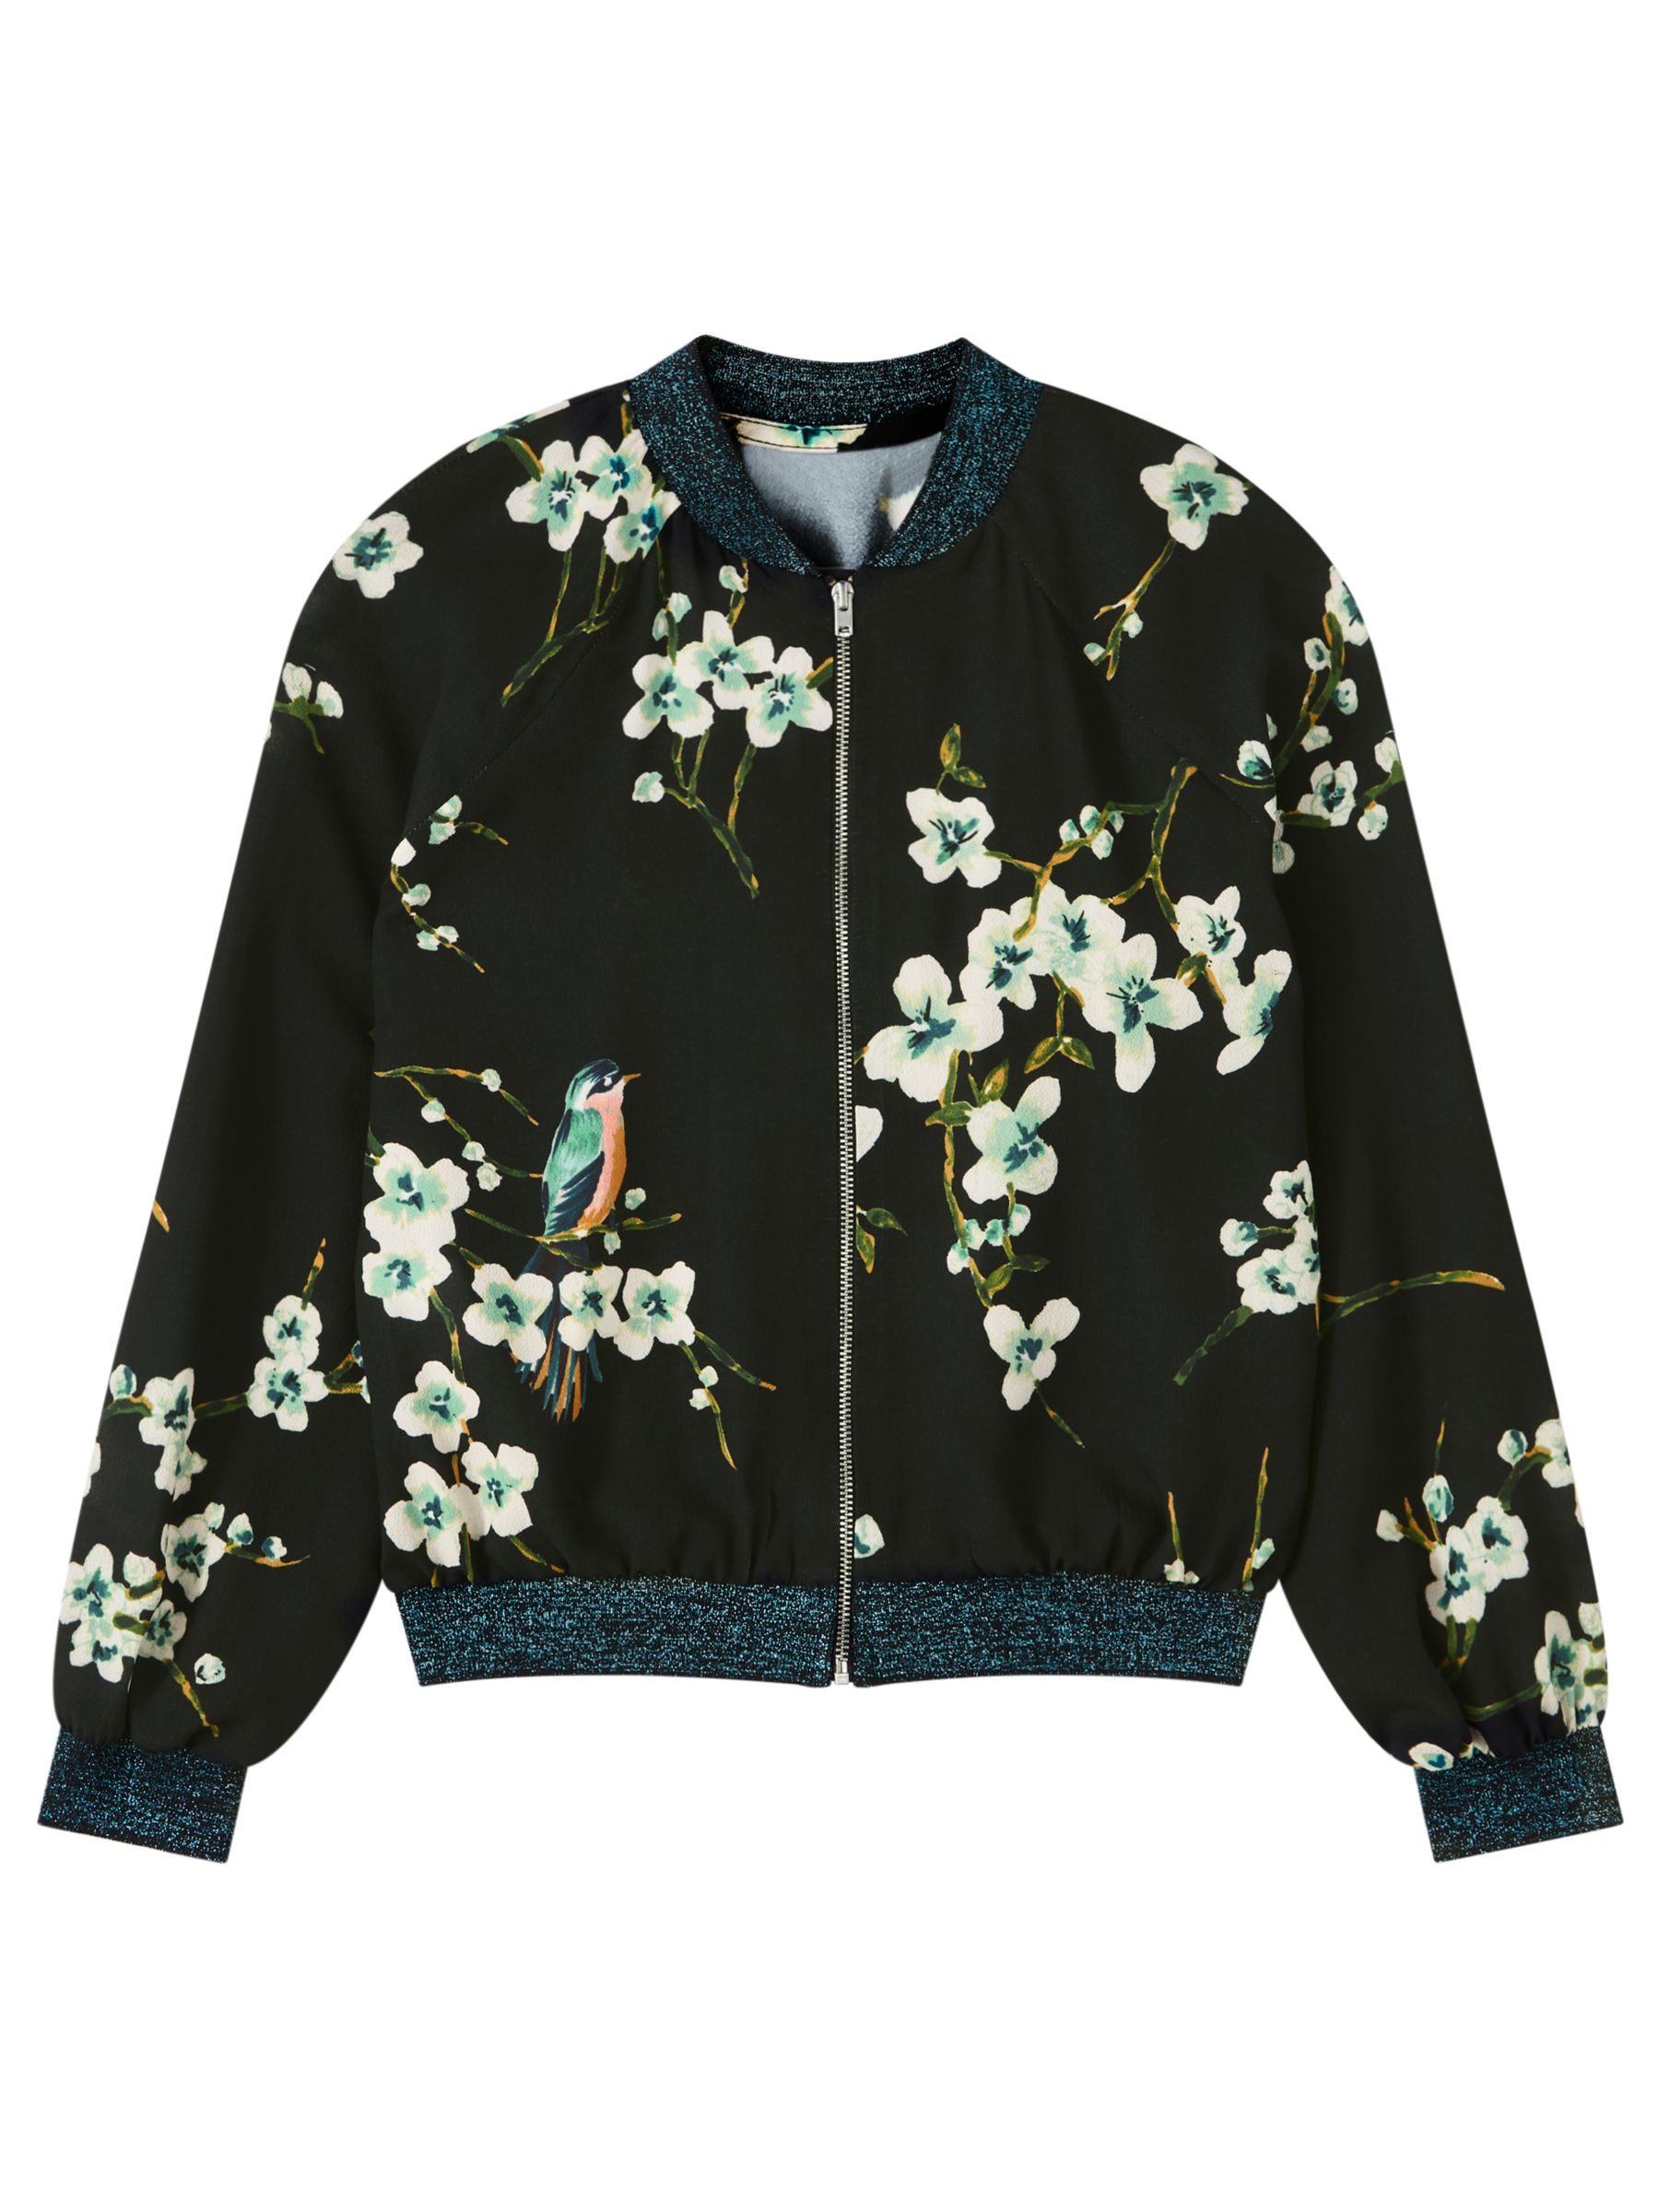 John Lewis & Partners Girls' Floral Bomber Jacket, Black